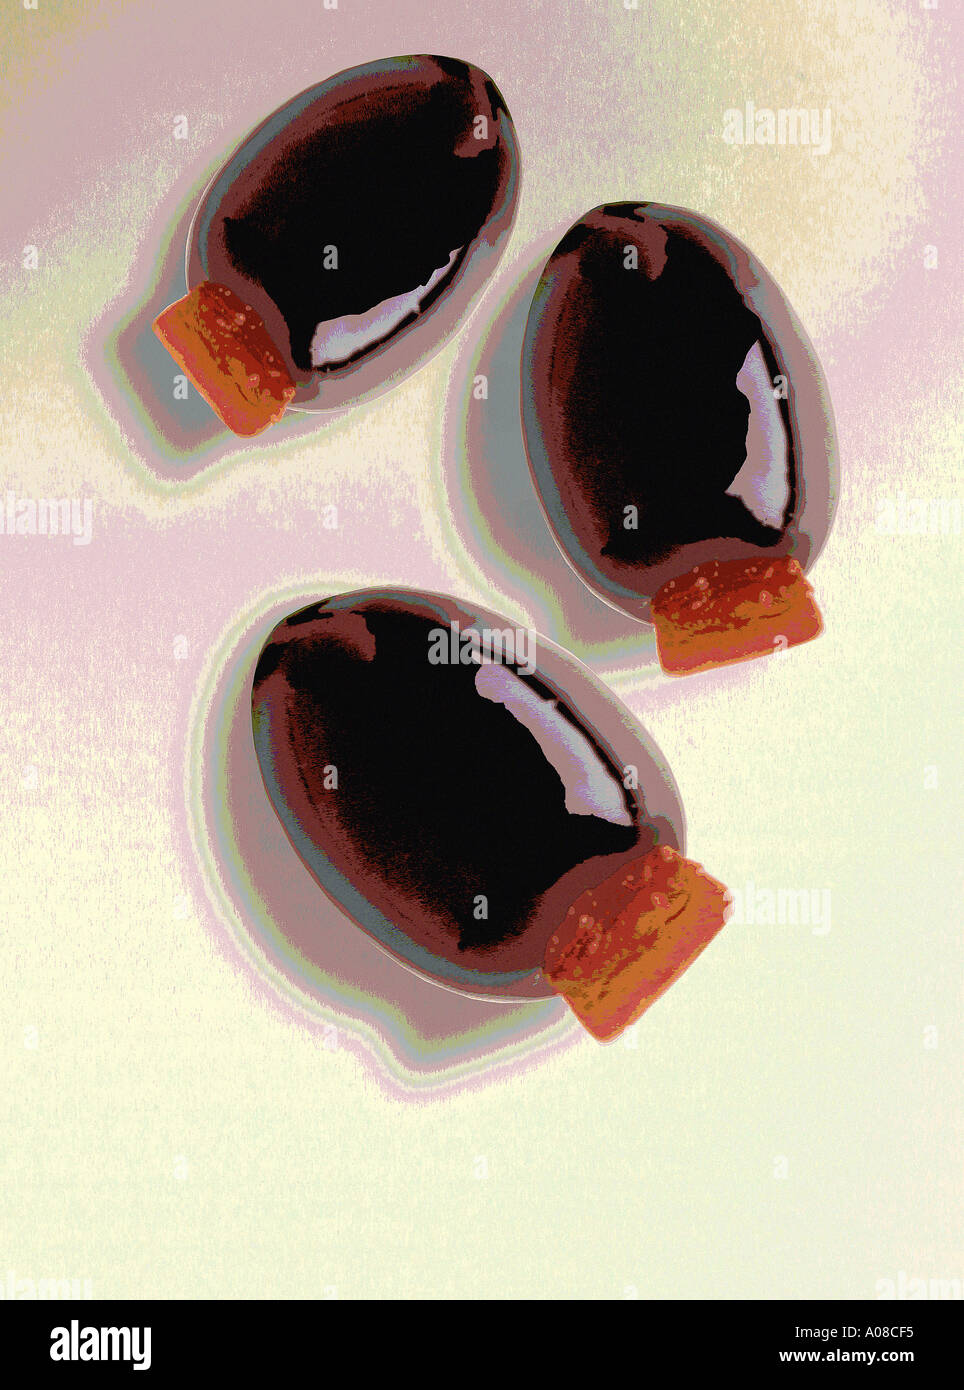 schwarze Oliven Closeup Digitalfoto Illustration - Komposition mit 3 großen schwarzen gefüllte Oliven Stockfoto